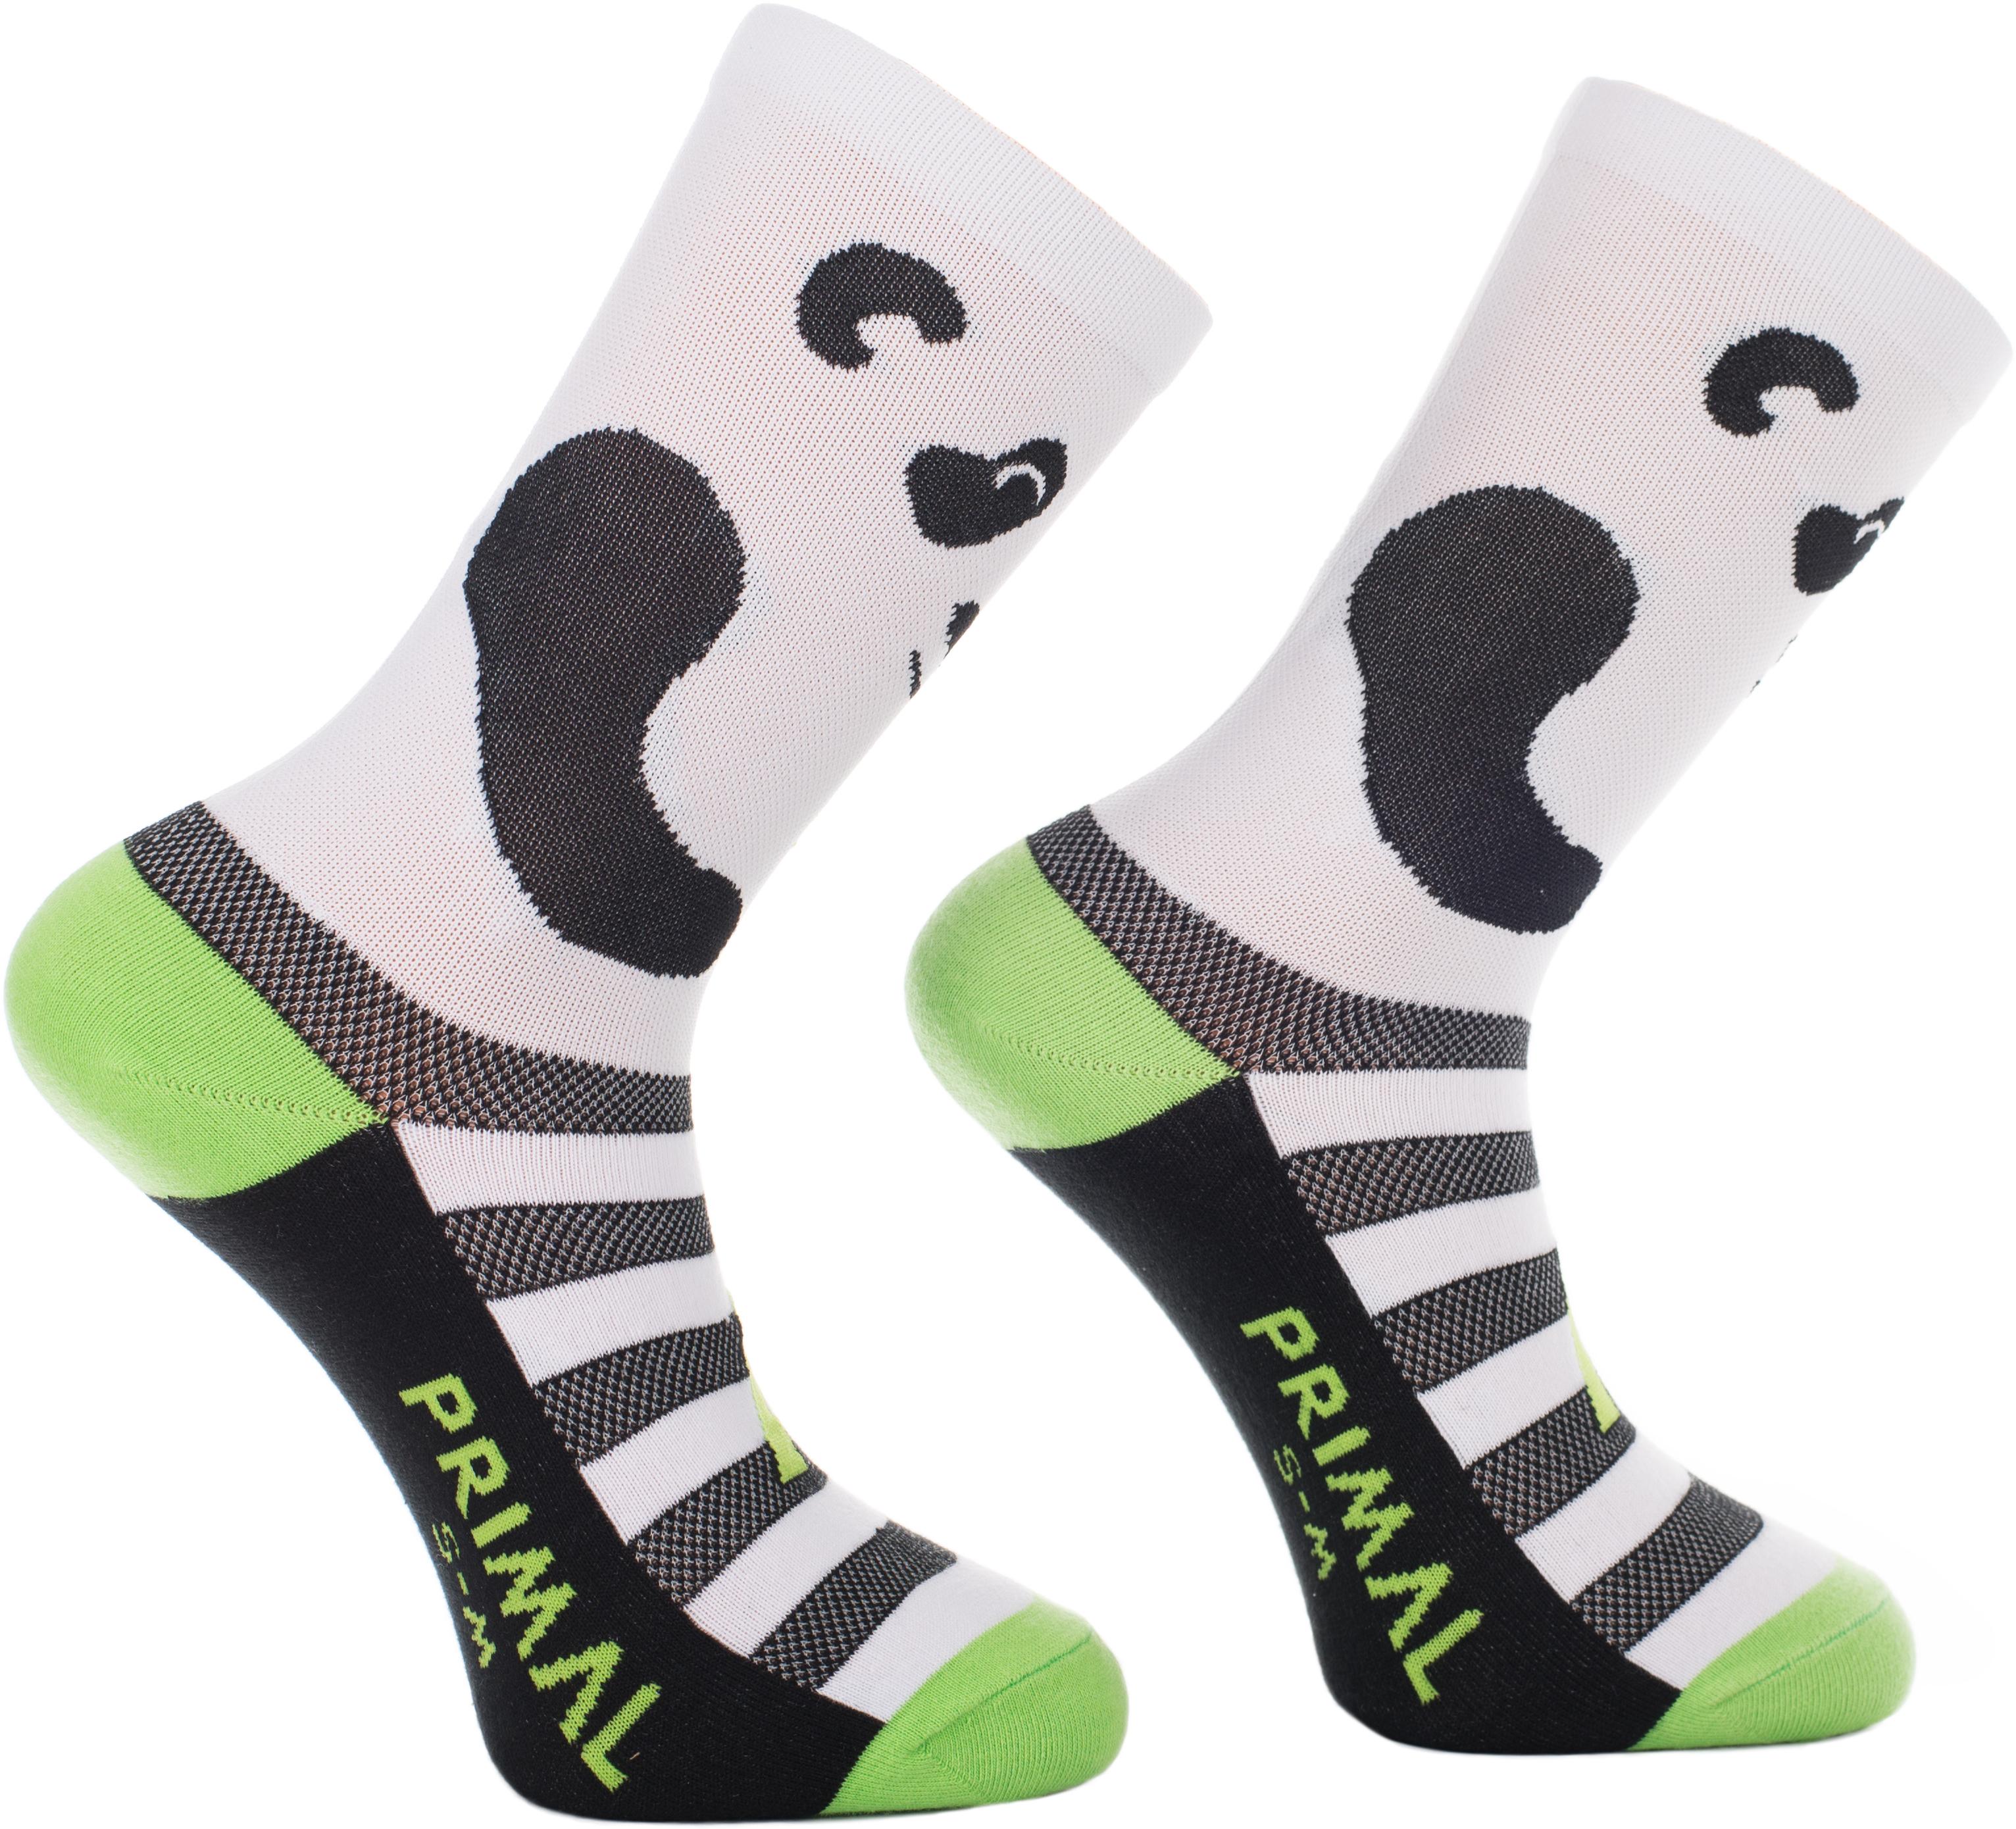 Primal Panda Socks - Black/white